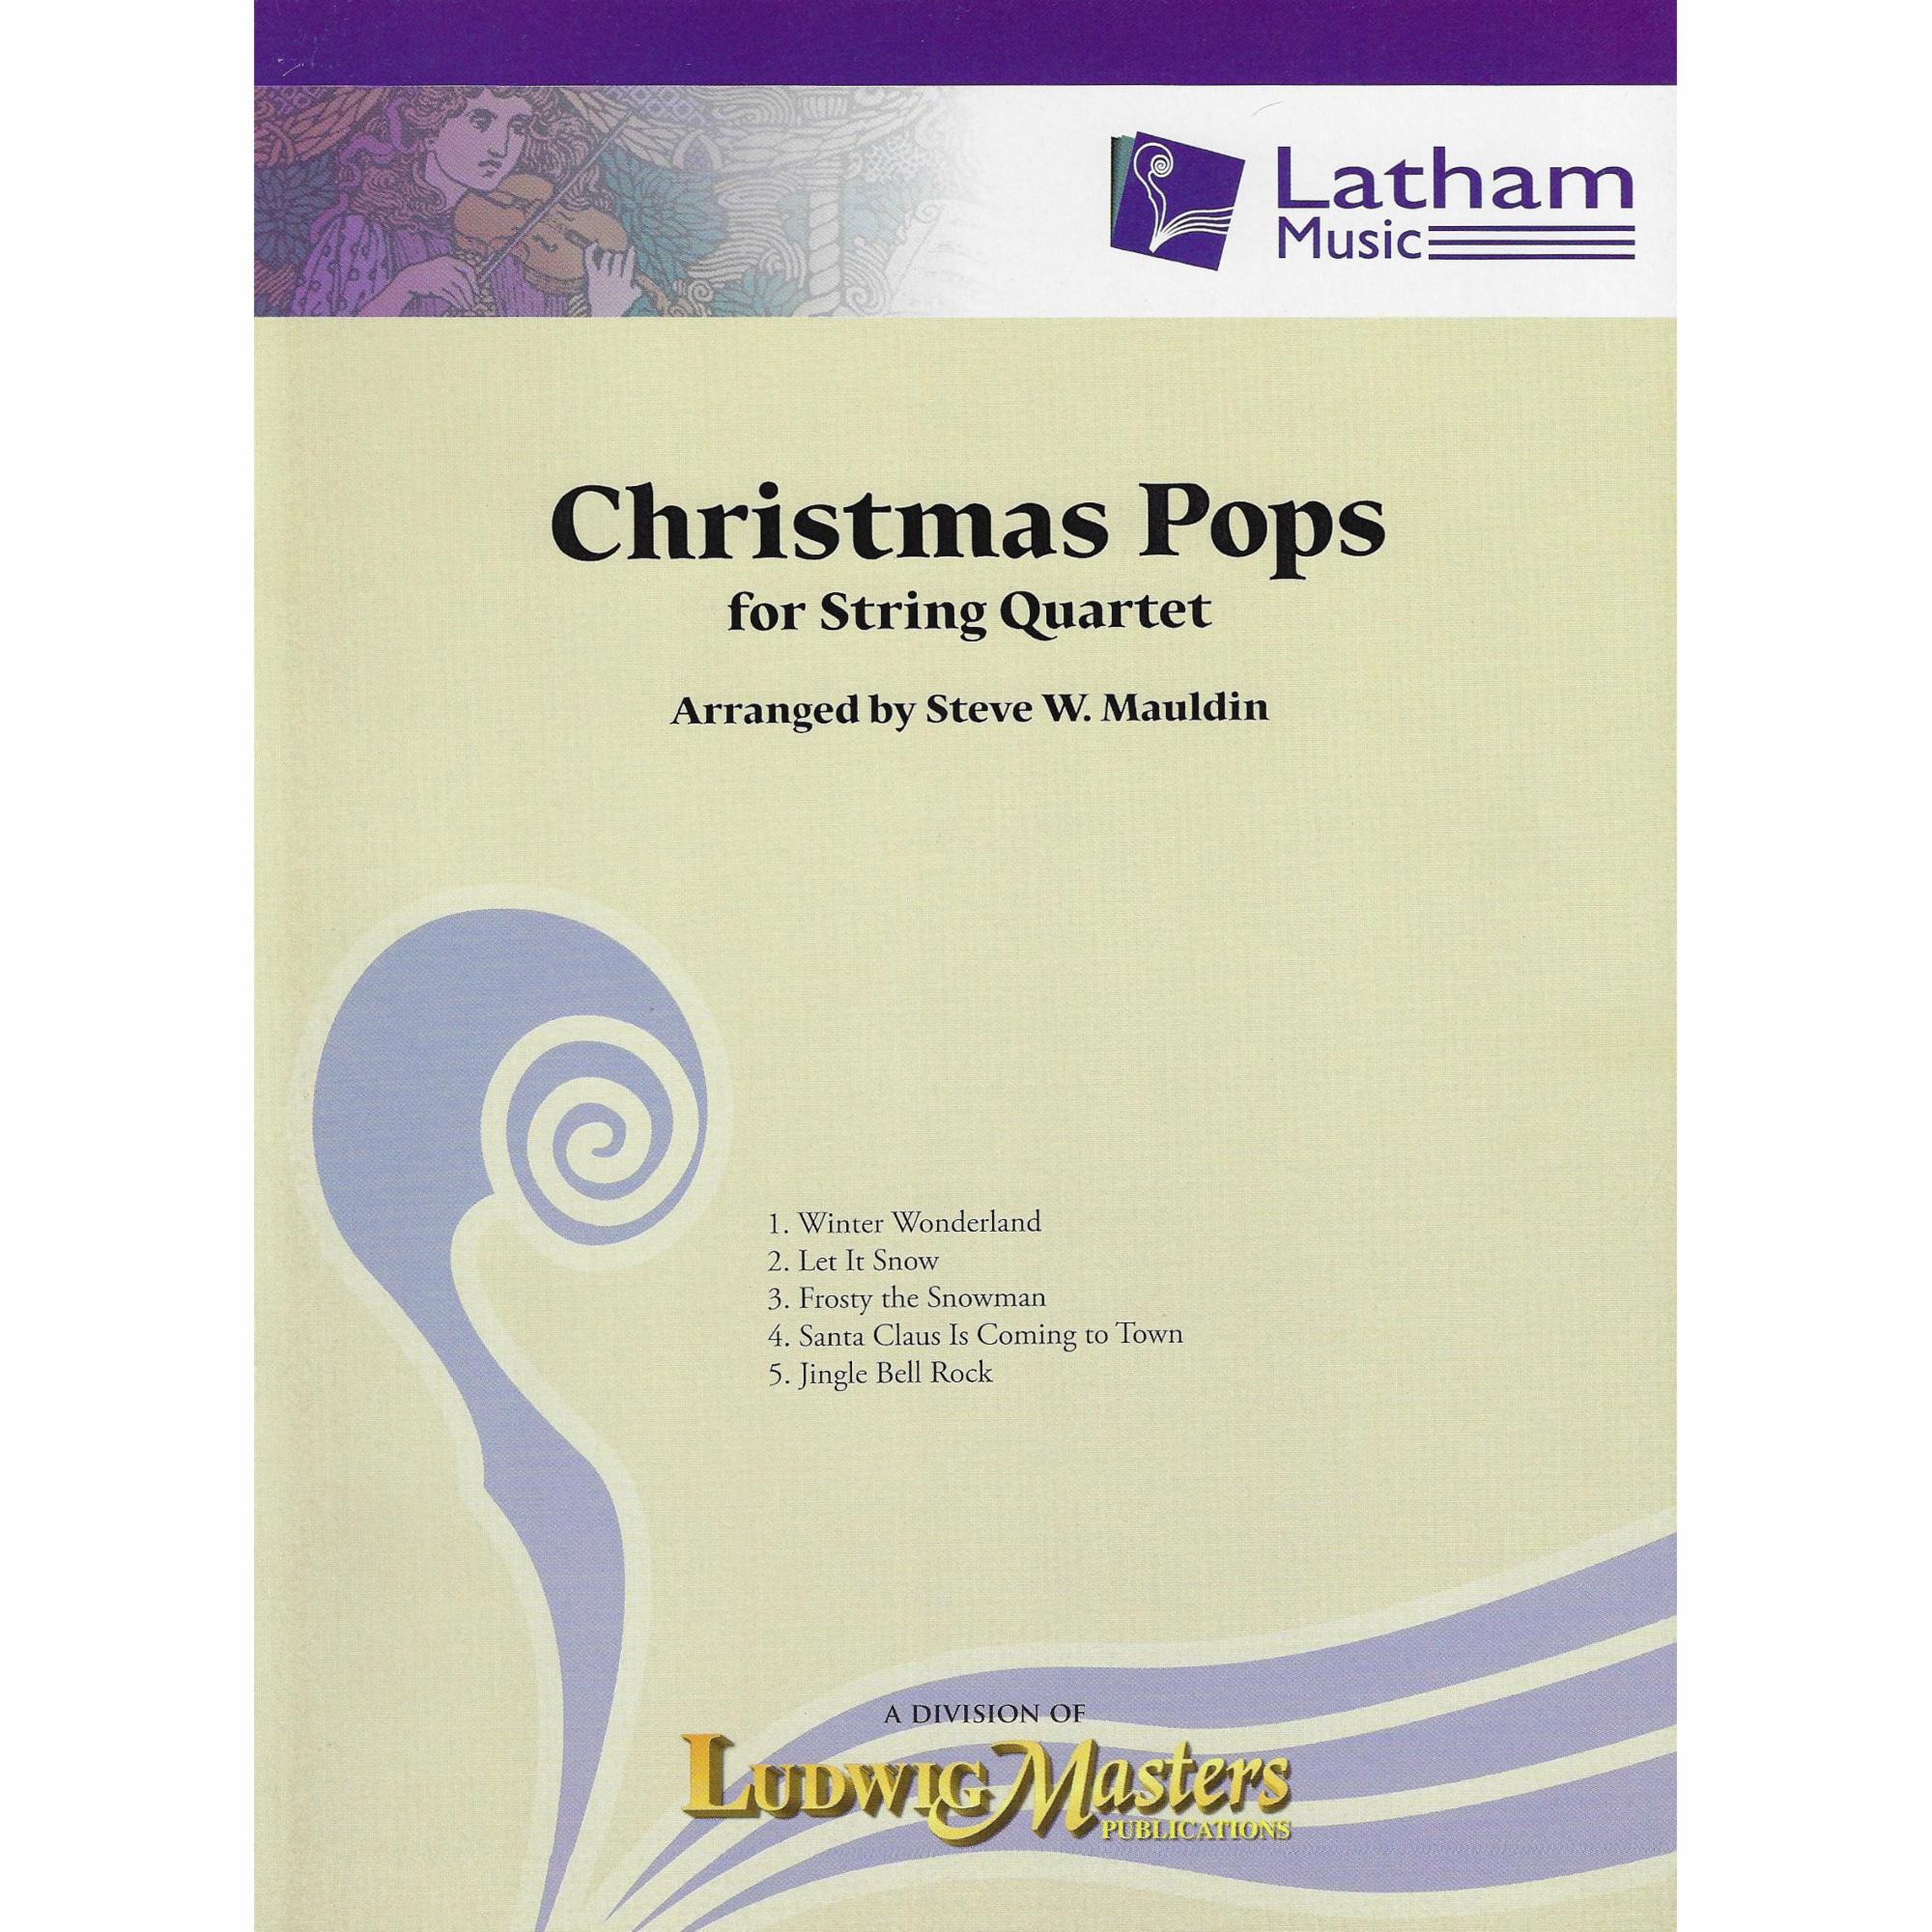 Christmas Pops for String Quartet